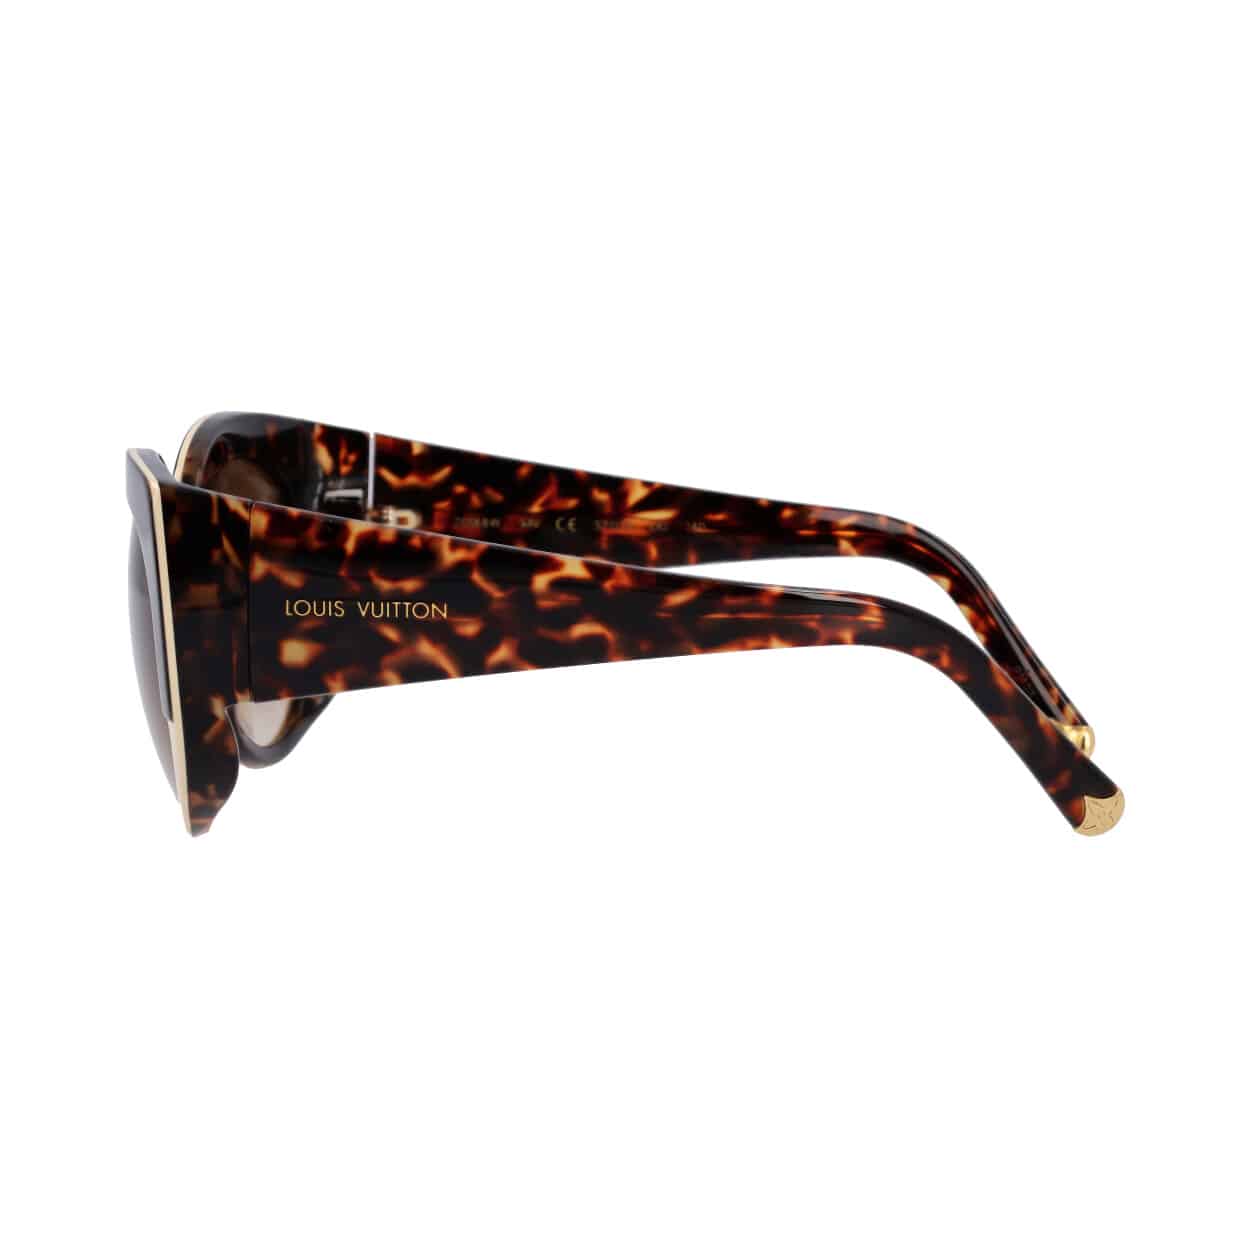 Product LOUIS VUITTON Sunglasses Z0588W Tortoise